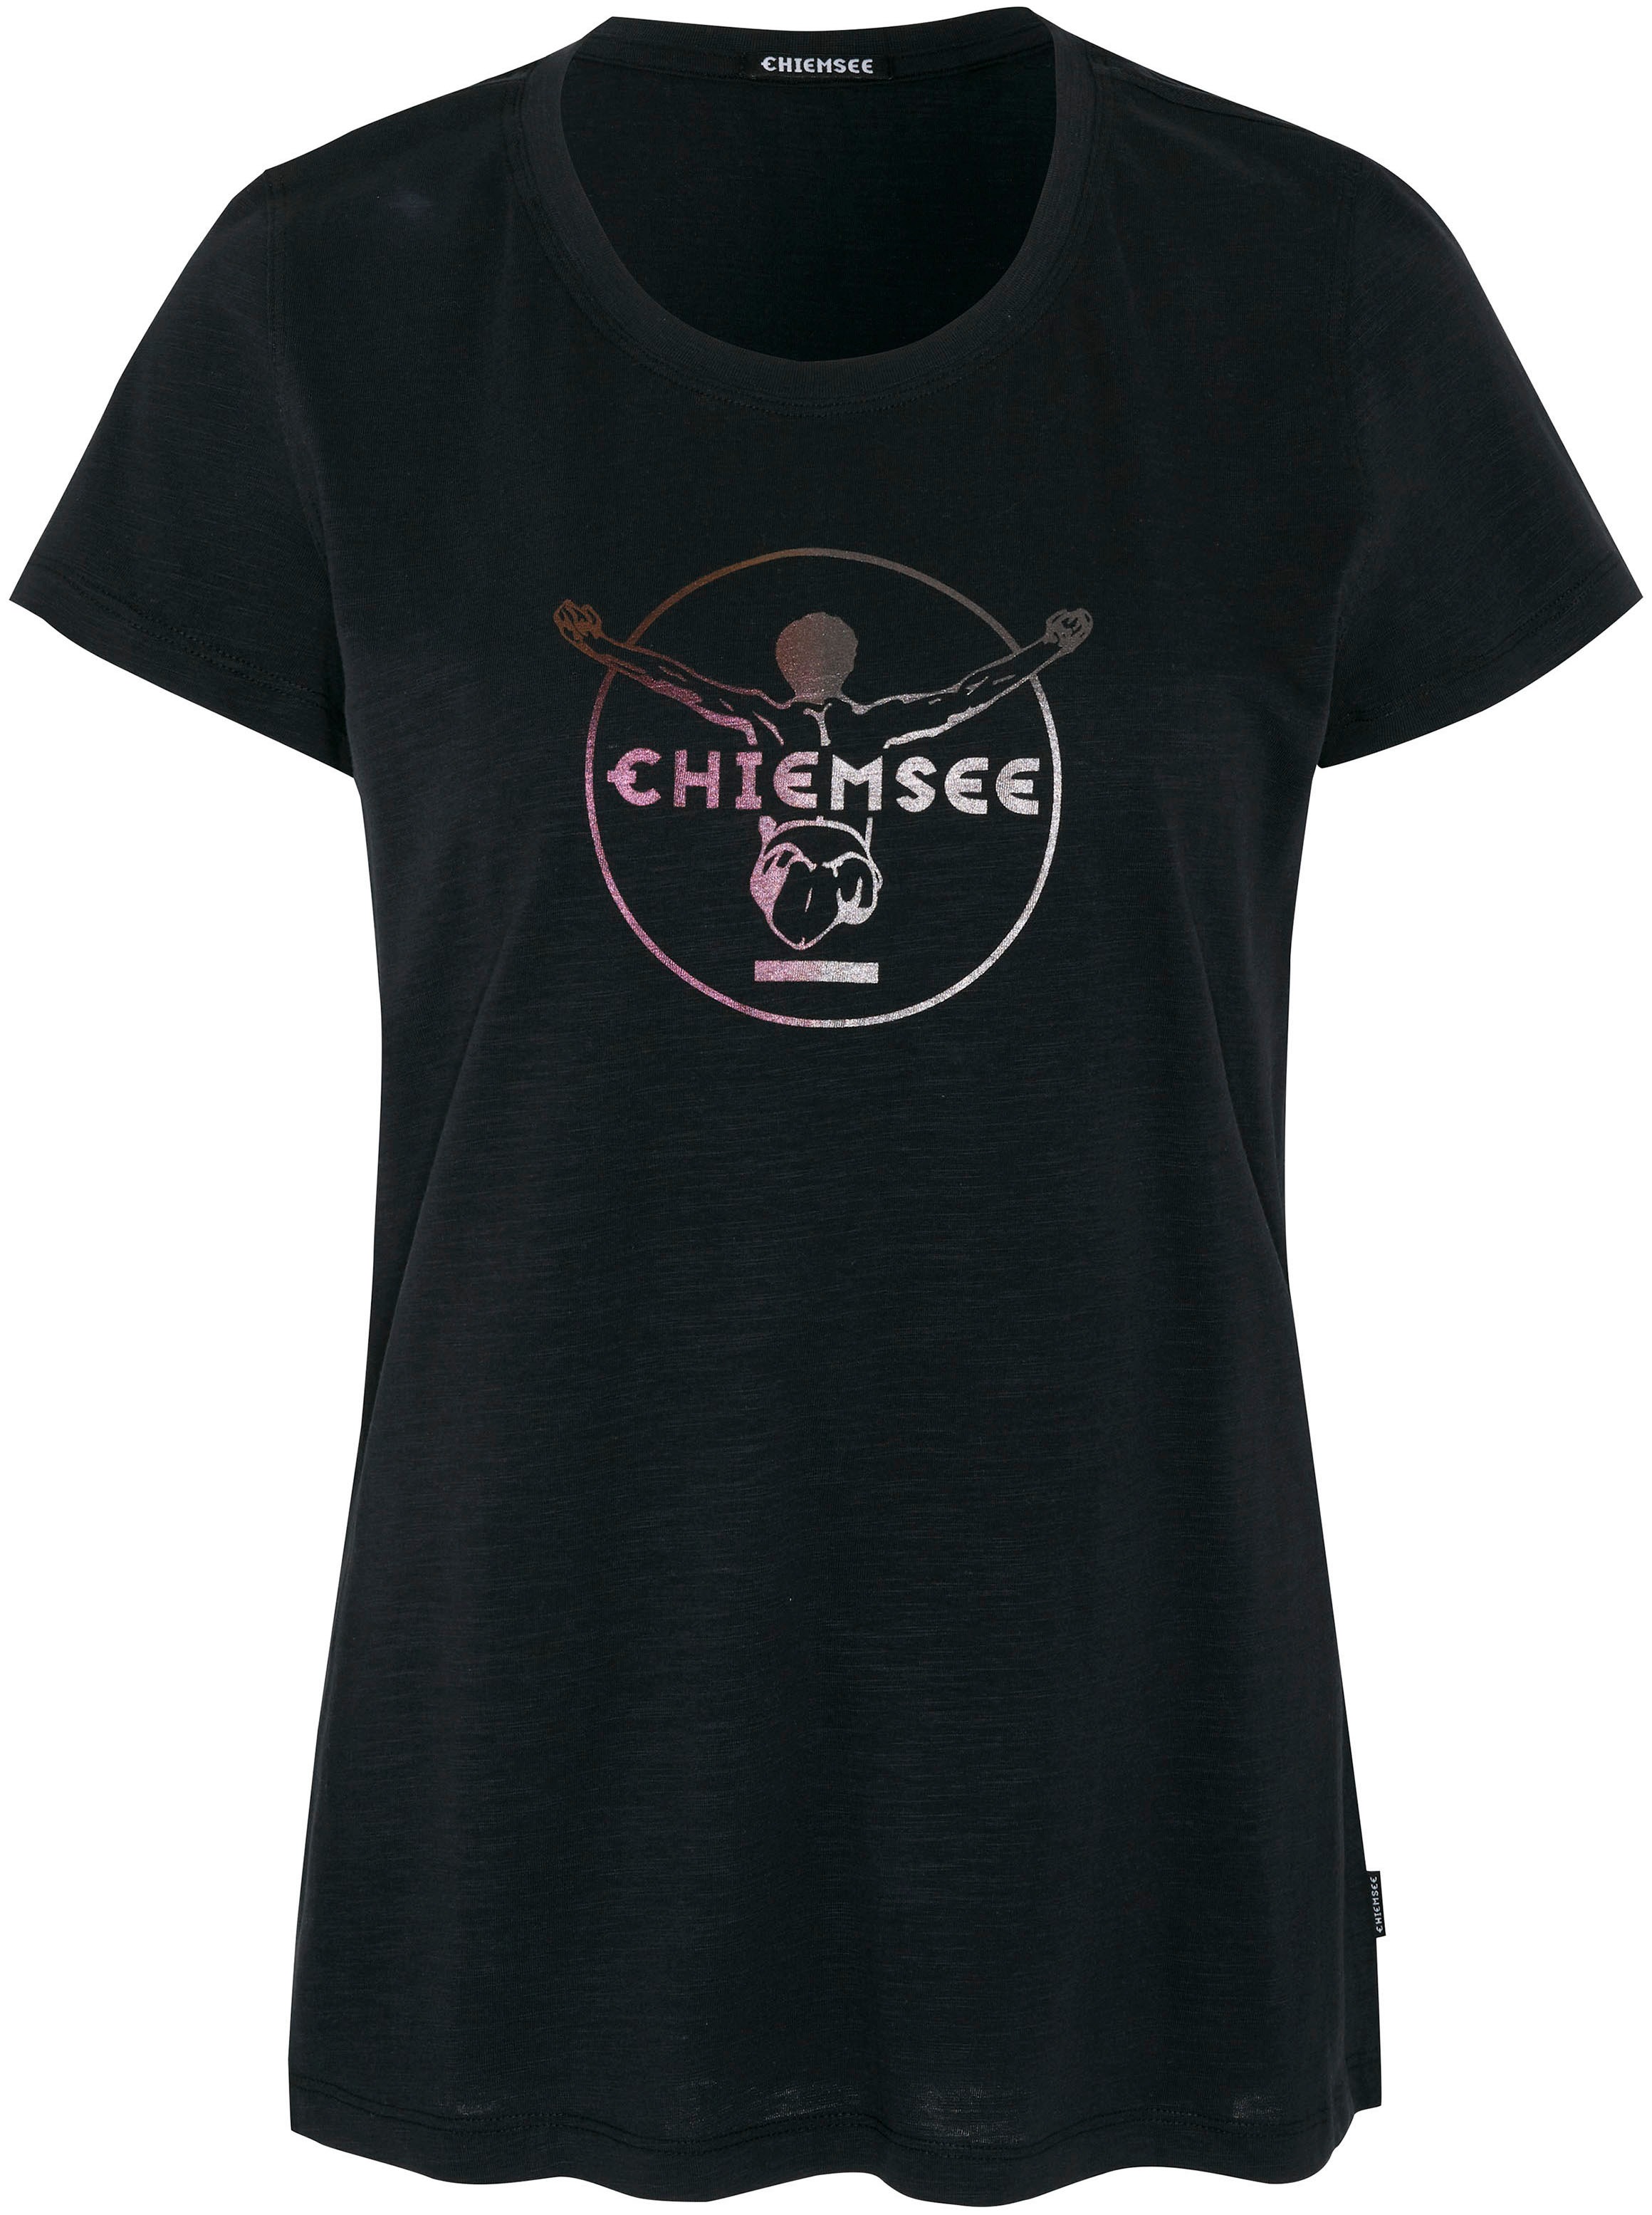 Chiemsee T-Shirt shoppen